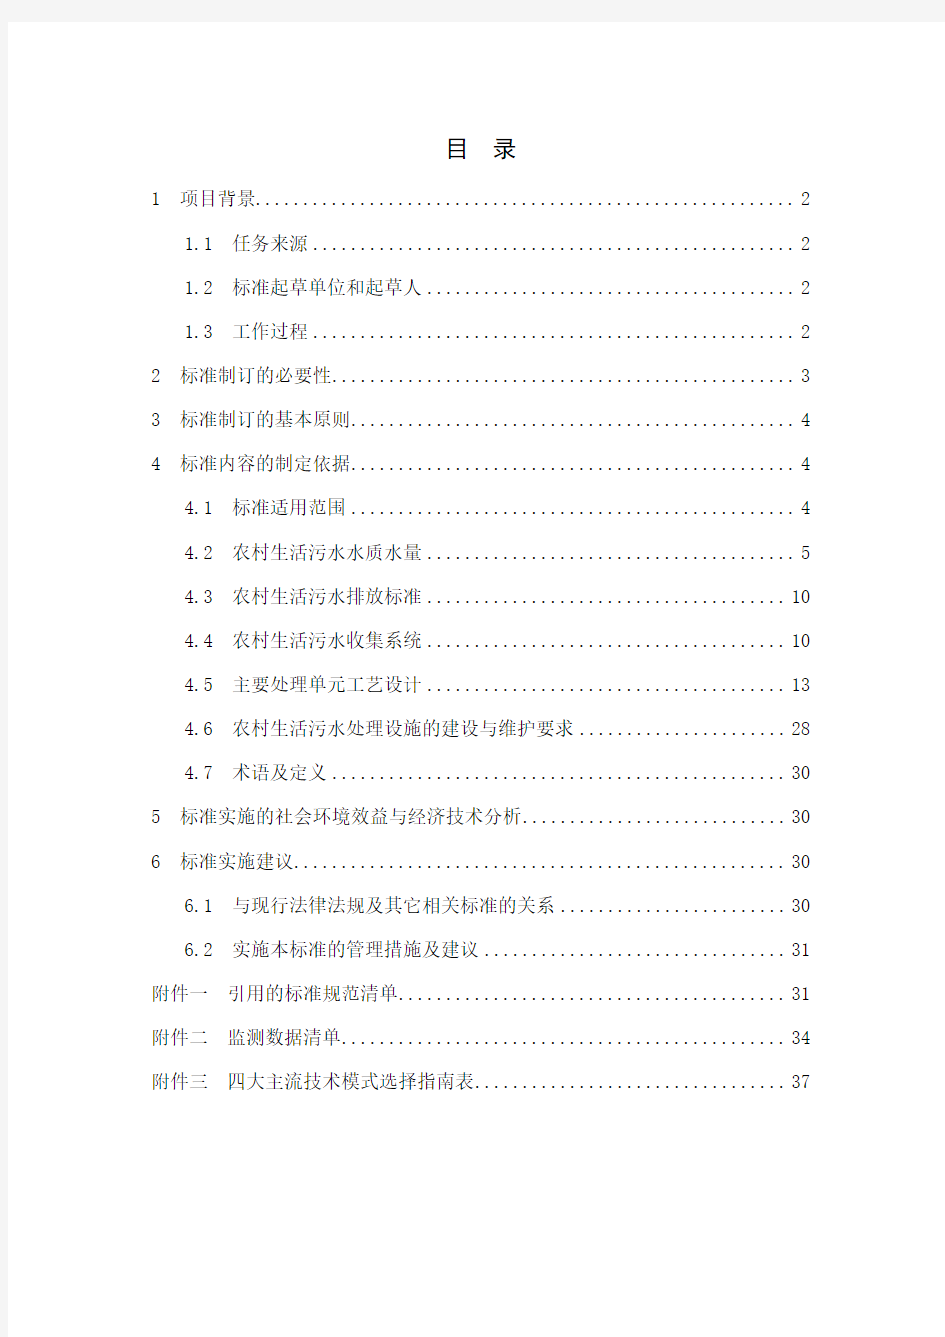 浙江省农村生活污水处理工程技术规范(征求意见稿)